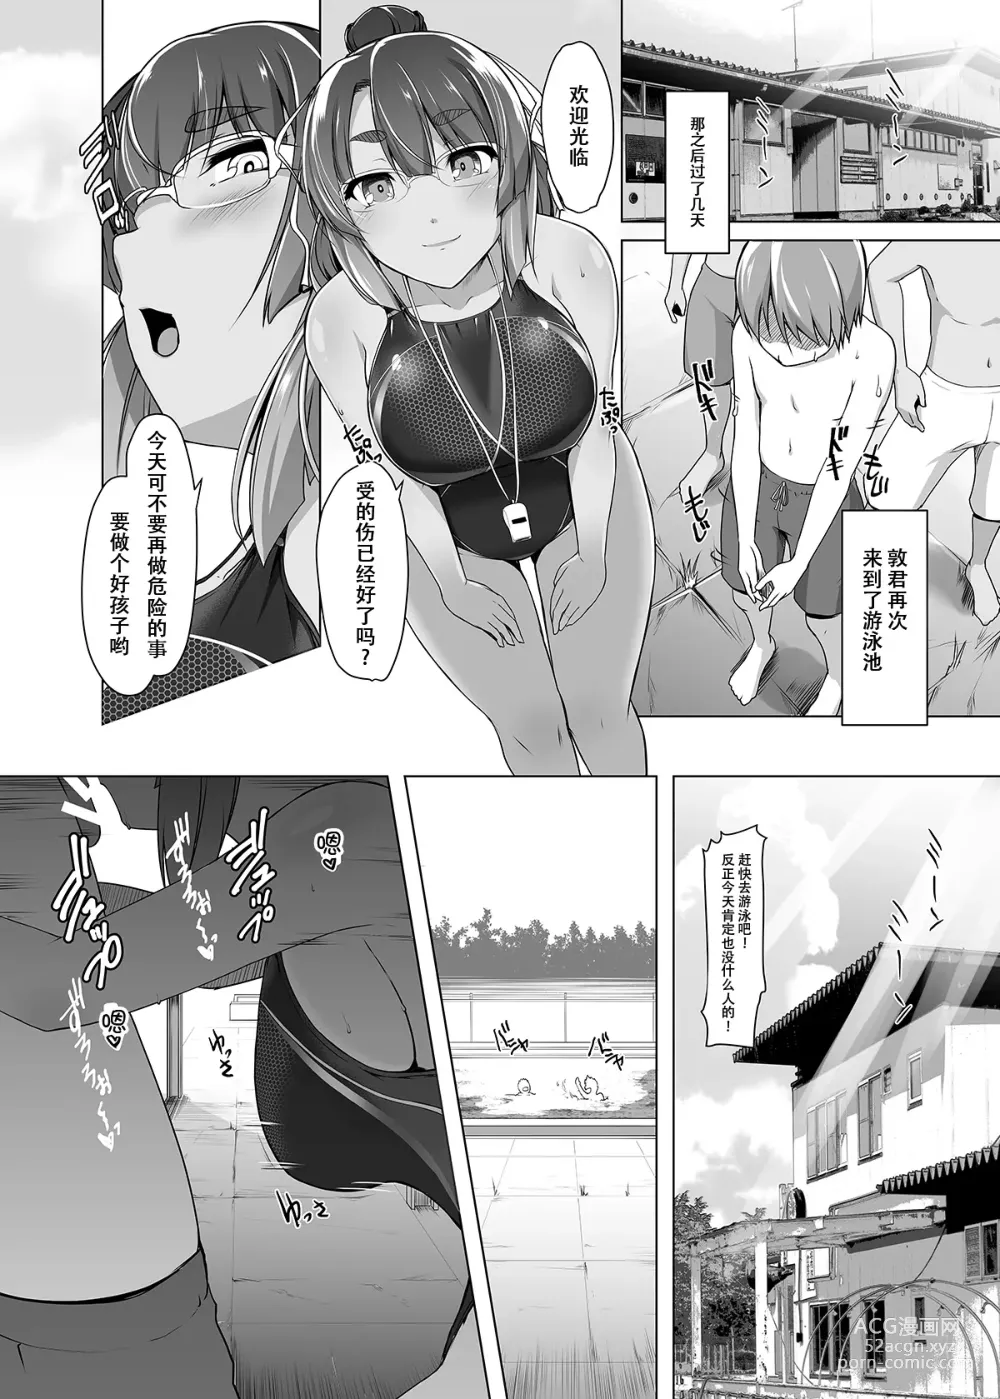 Page 12 of doujinshi Natsuzora no Misono-san - Ms. Misono and Summer Sky.